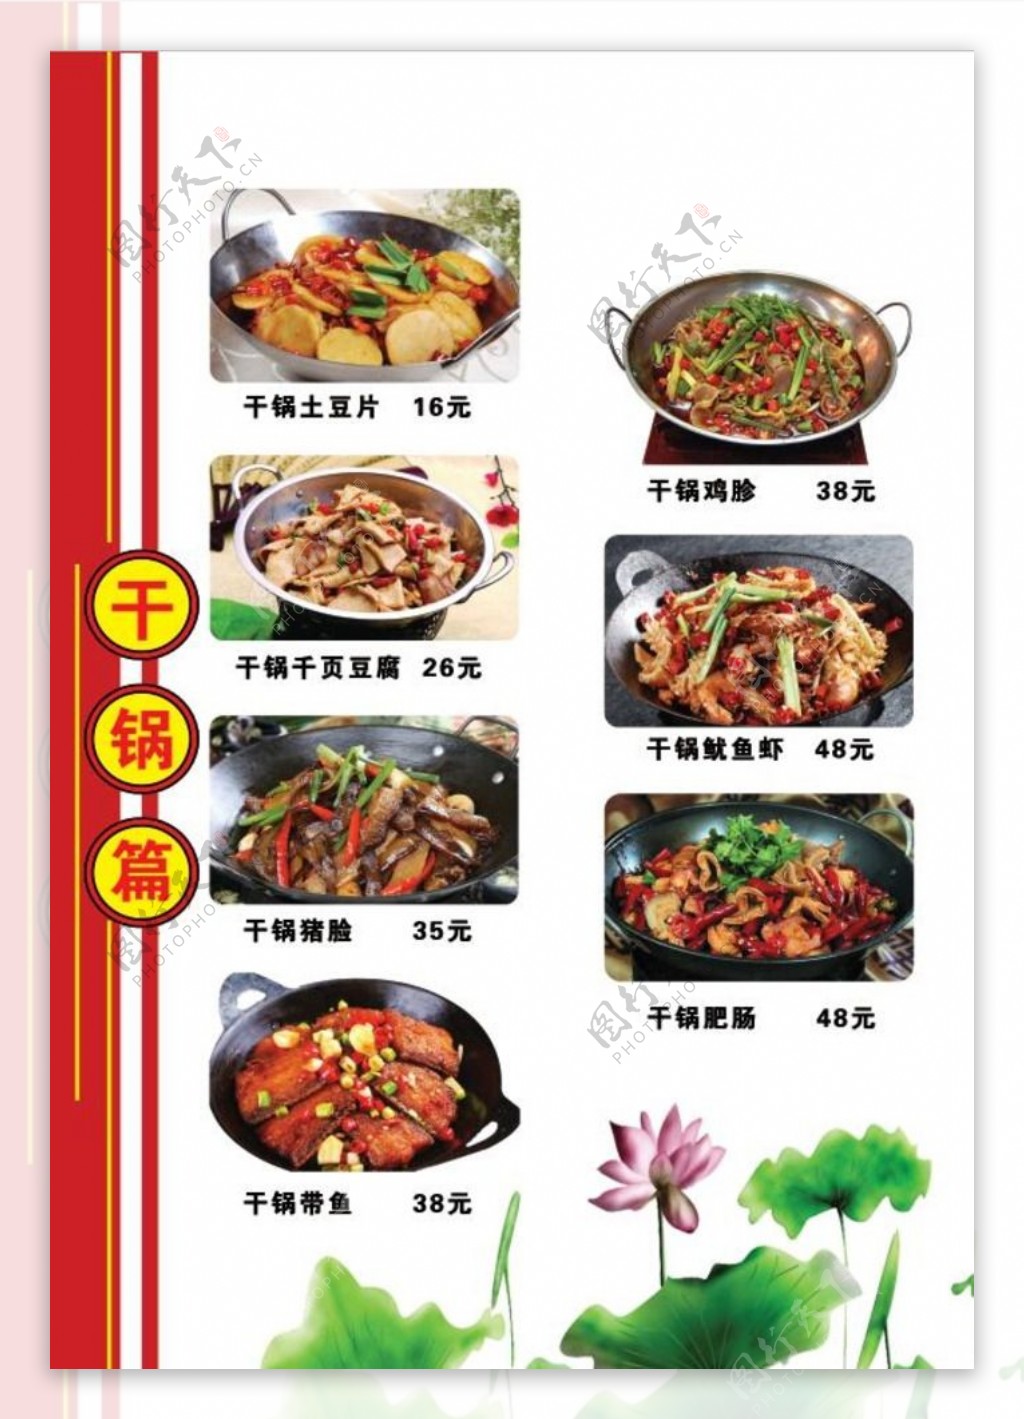 干锅菜单图片展示